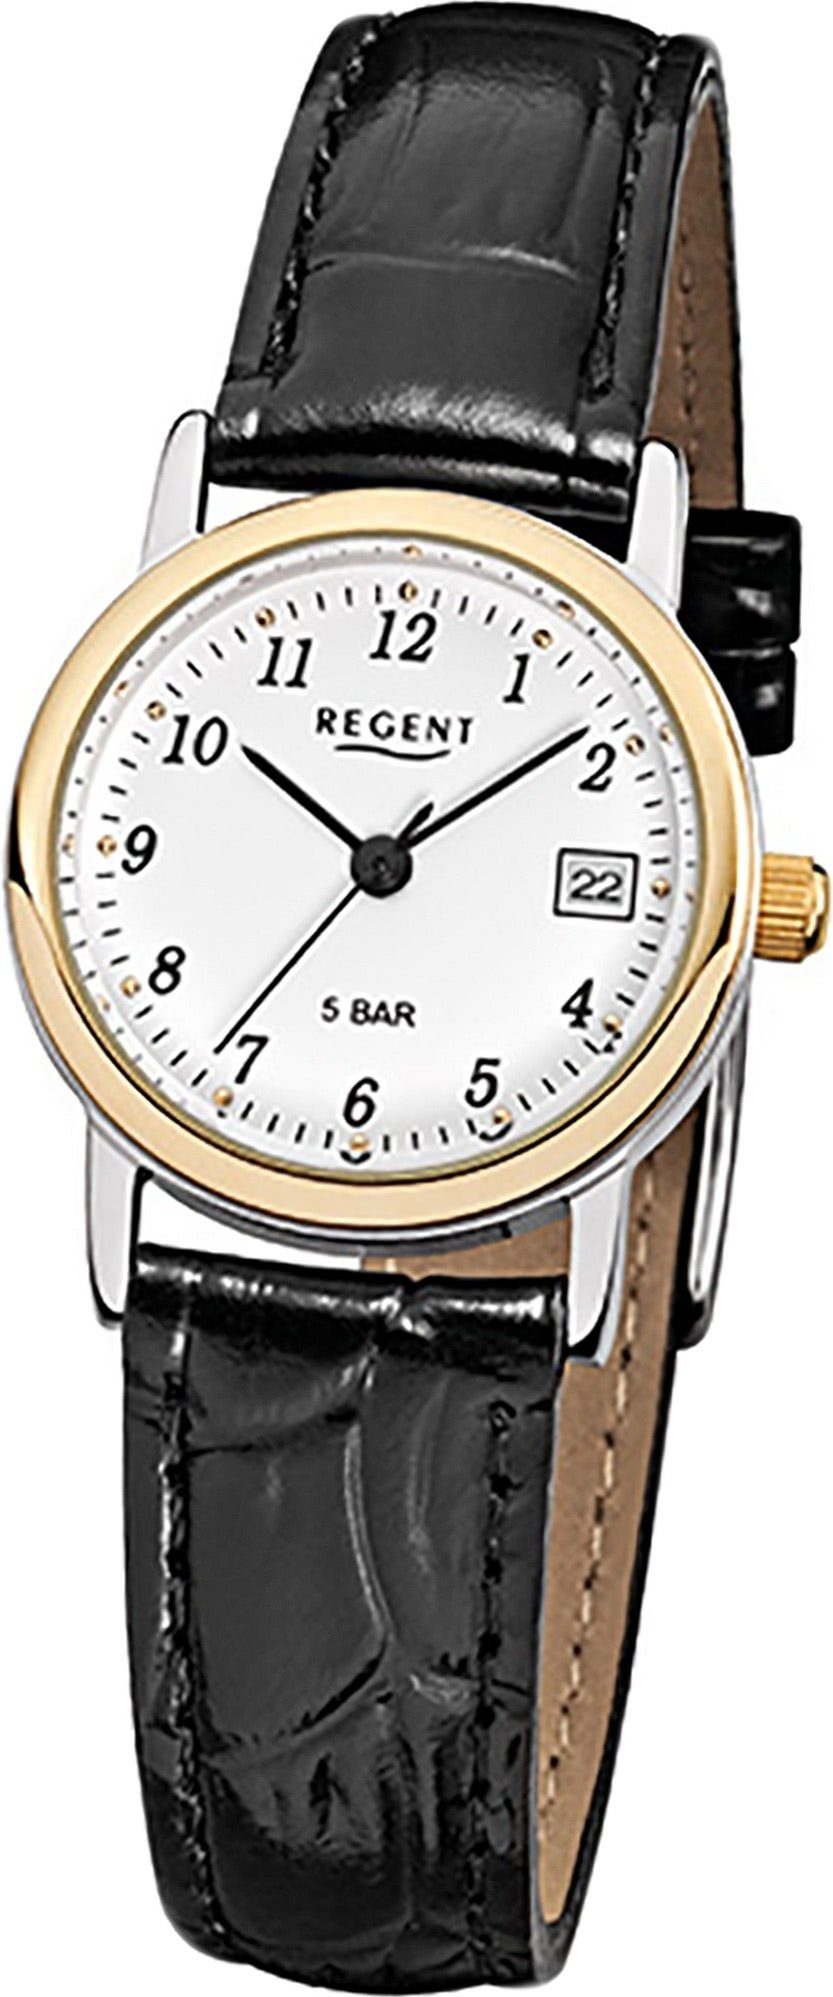 Regent Quarzuhr Regent Leder Damen (ca. F-828 Quarzuhr, schwarz, rundes 25mm) Lederarmband klein Damenuhr Uhr Gehäuse